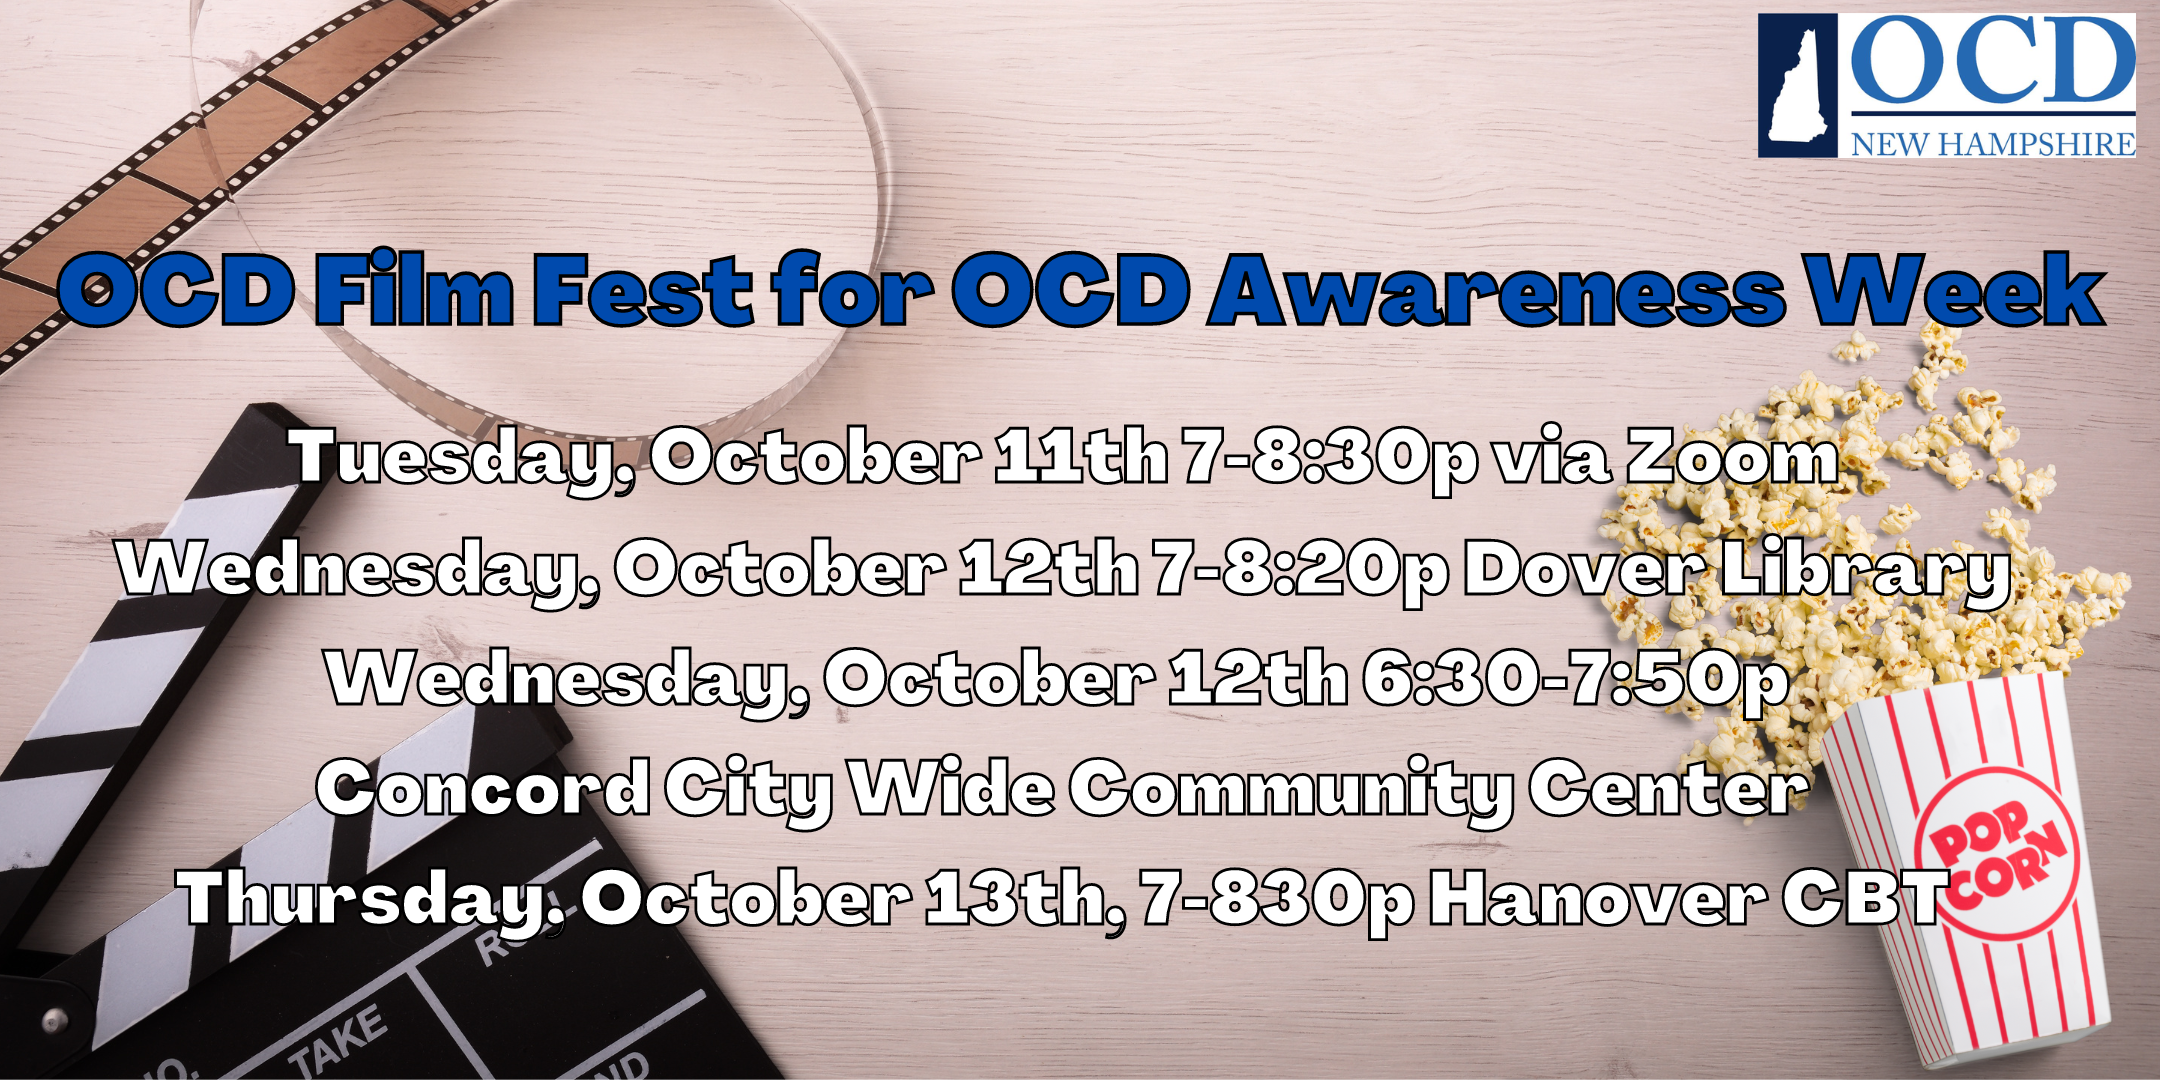 Join Us For OCD Film Fest for OCD Awareness Week.